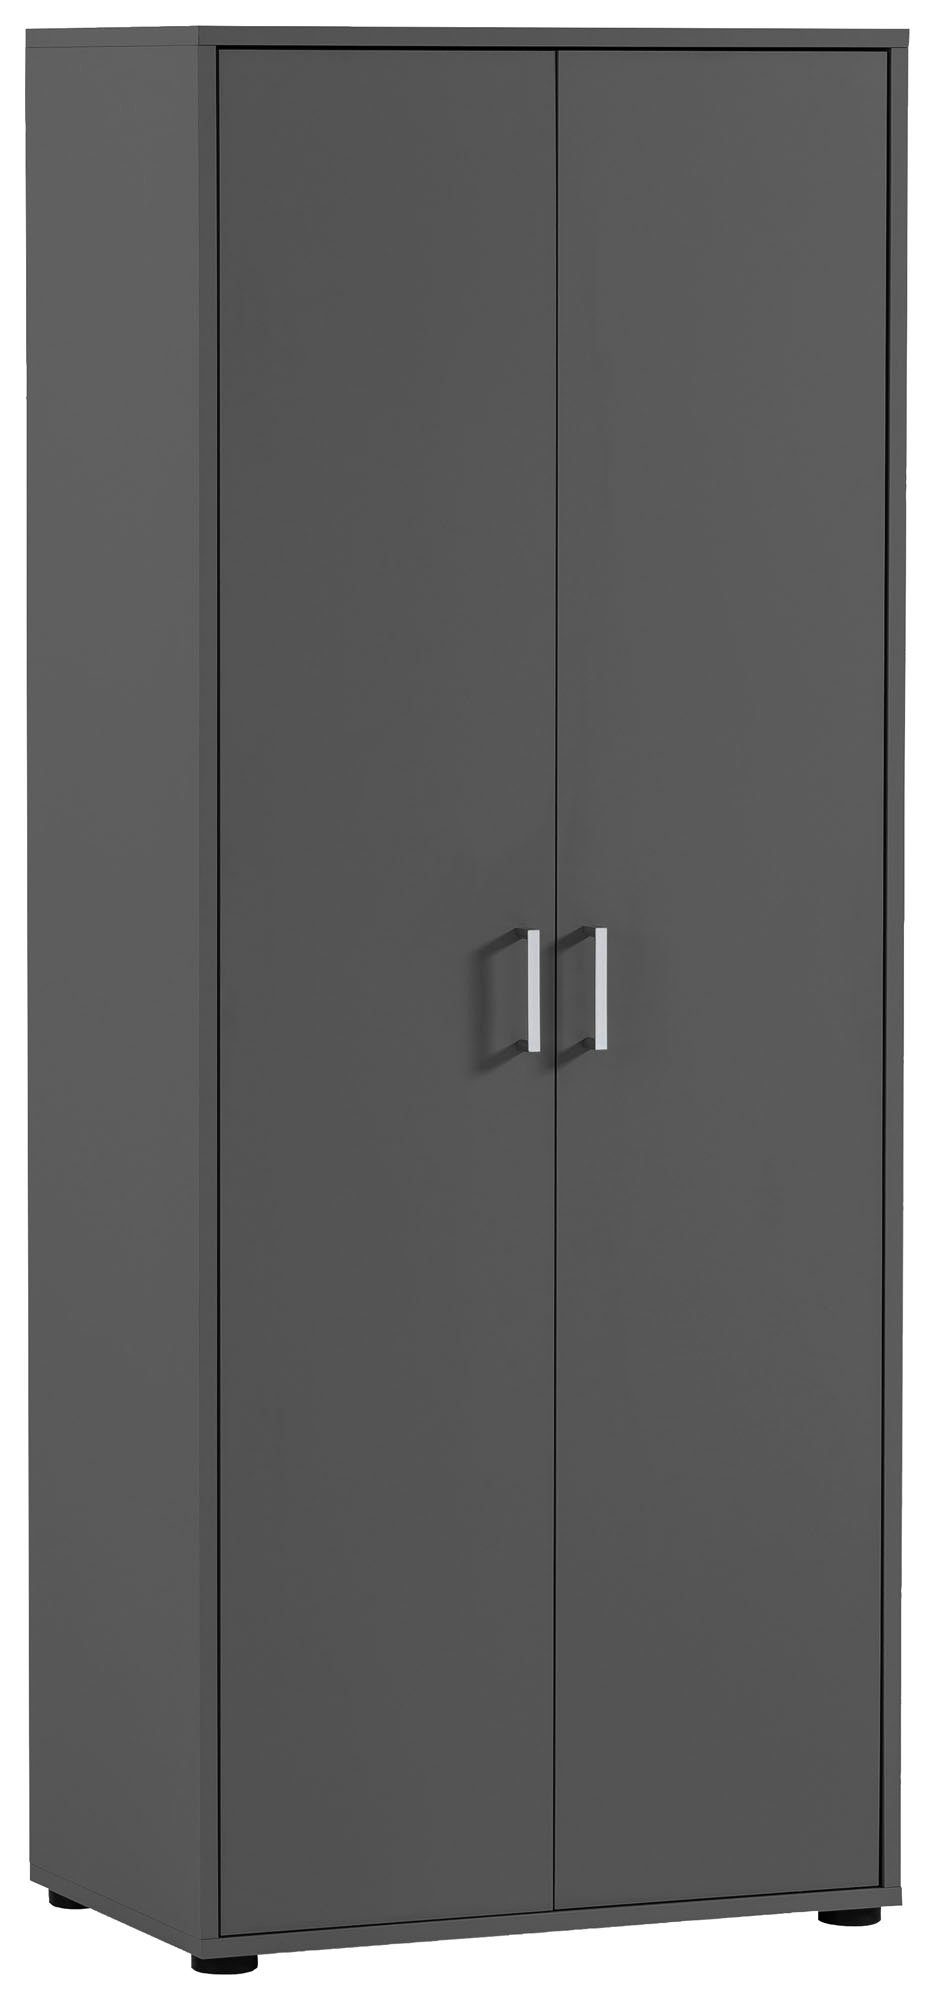 Schildmeyer Aktenschrank Baku Stauraumschrank, 65x163 cm, Türen mit Soft-Close-Funktion anthrazit | anthrazit